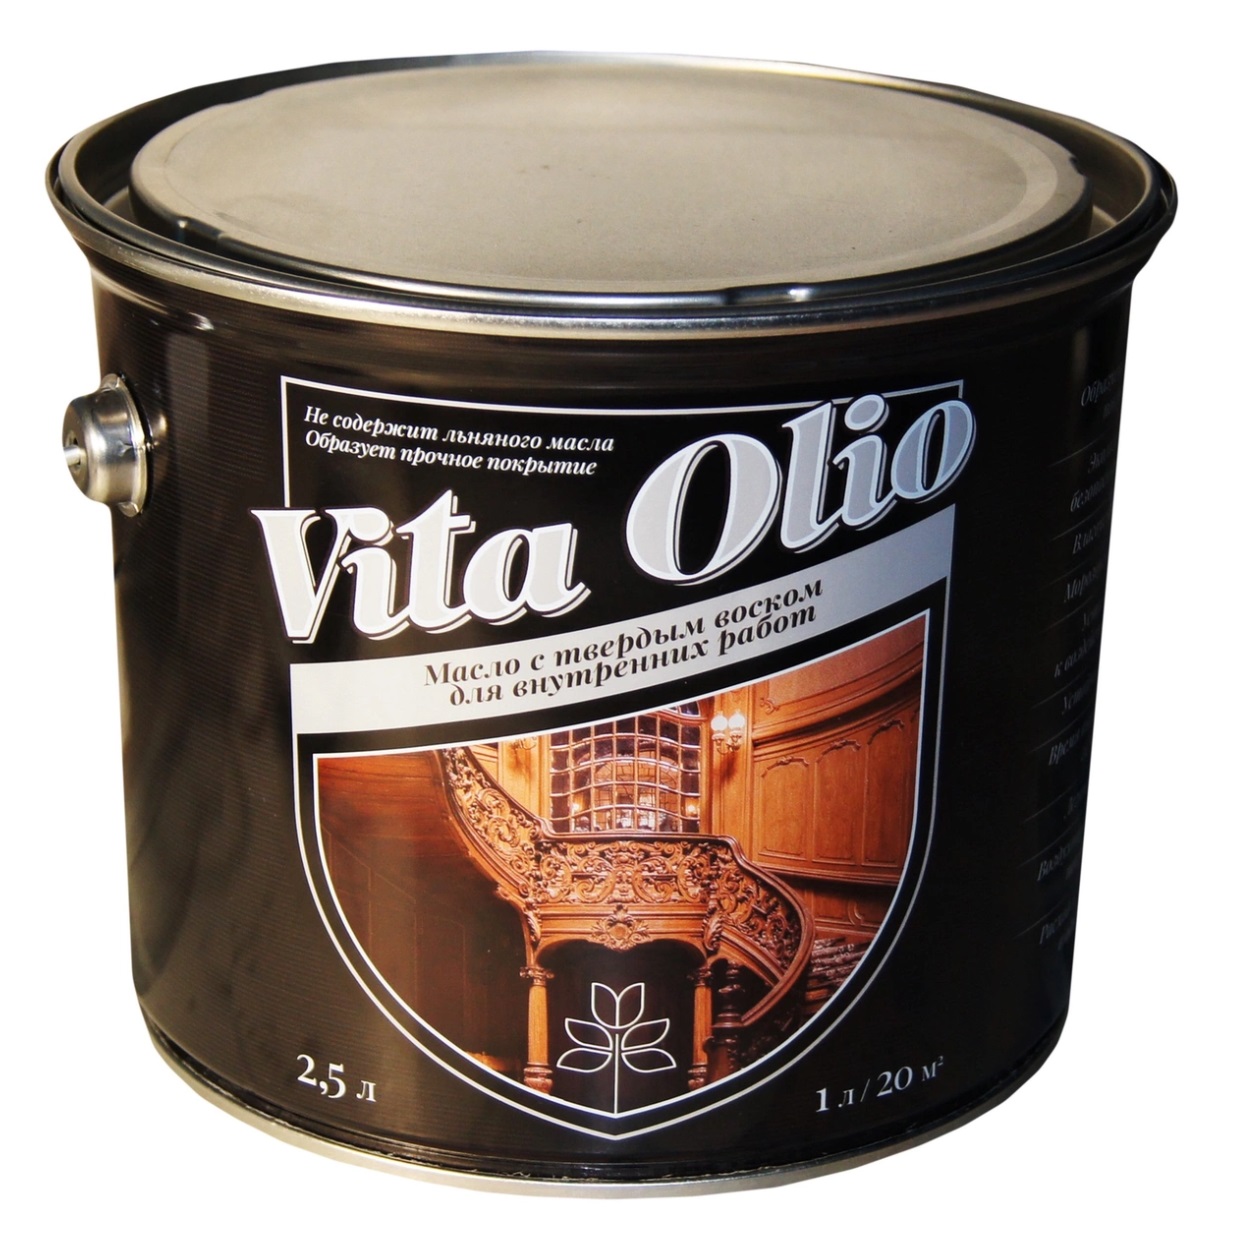 Масло VITA OLIO для внутренних работ с твердым воском шелковисто-матовое цвет орех донской. 2,5 л.